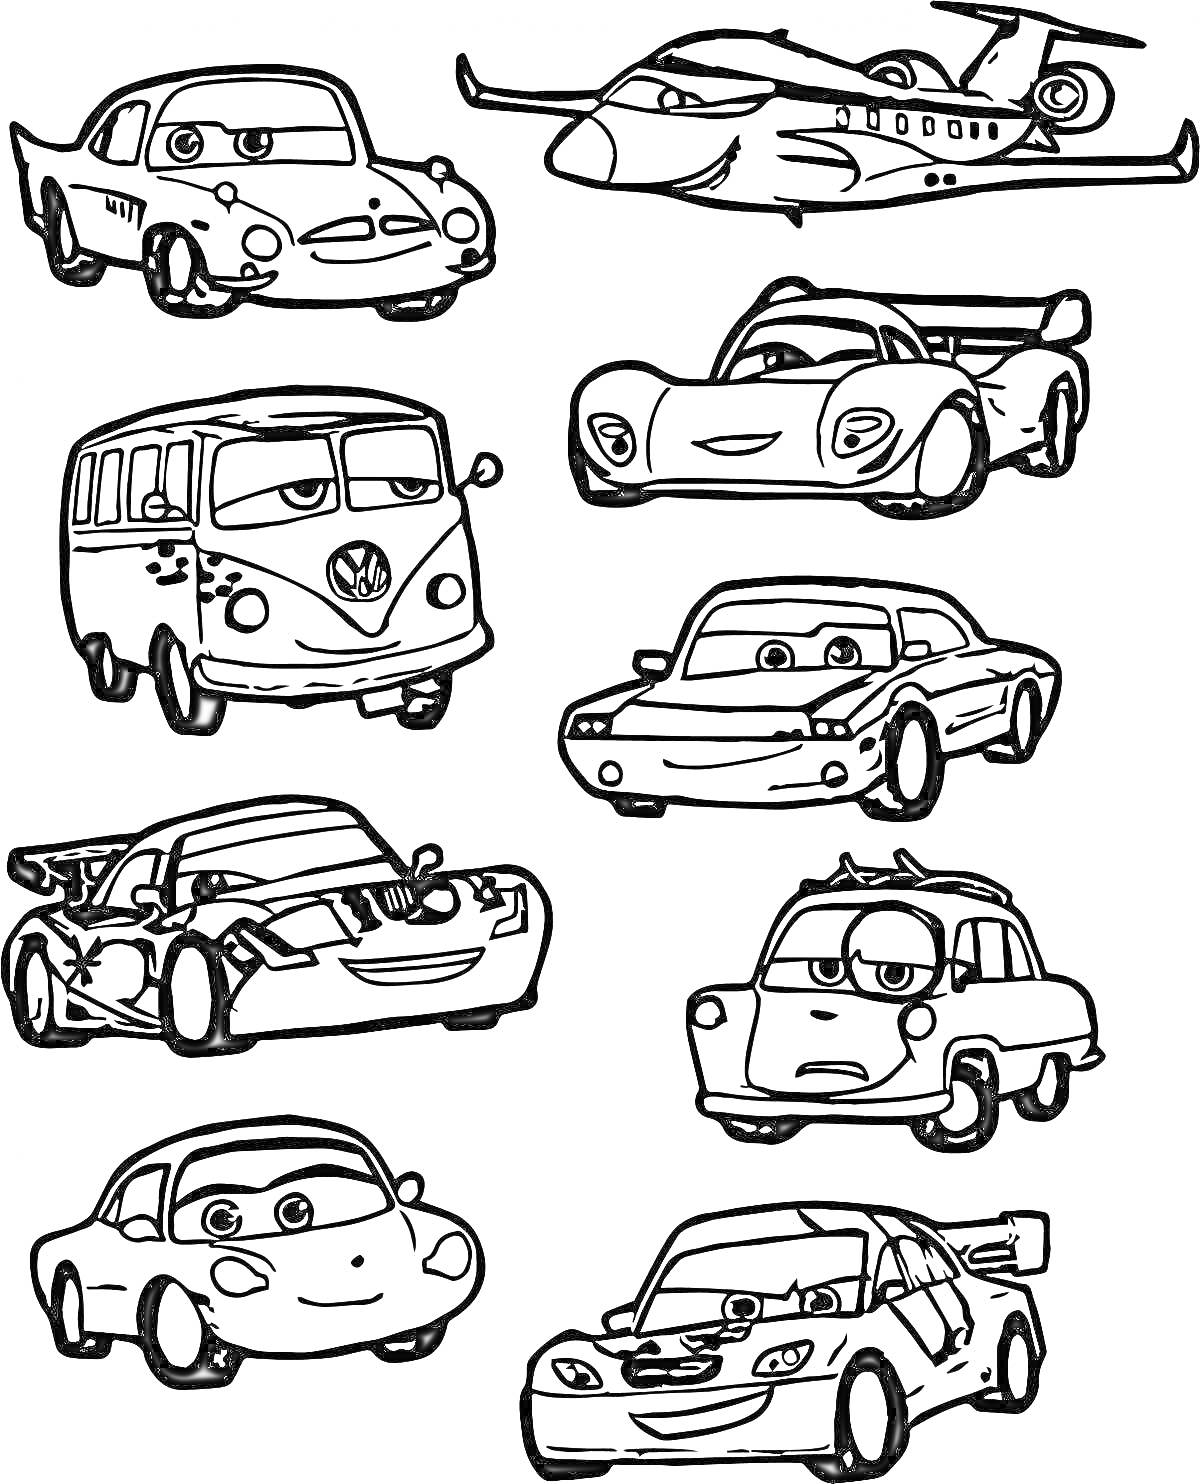 Раскраска Раскраска с изображением различных персонажей из мультфильма про автомобили и самолеты